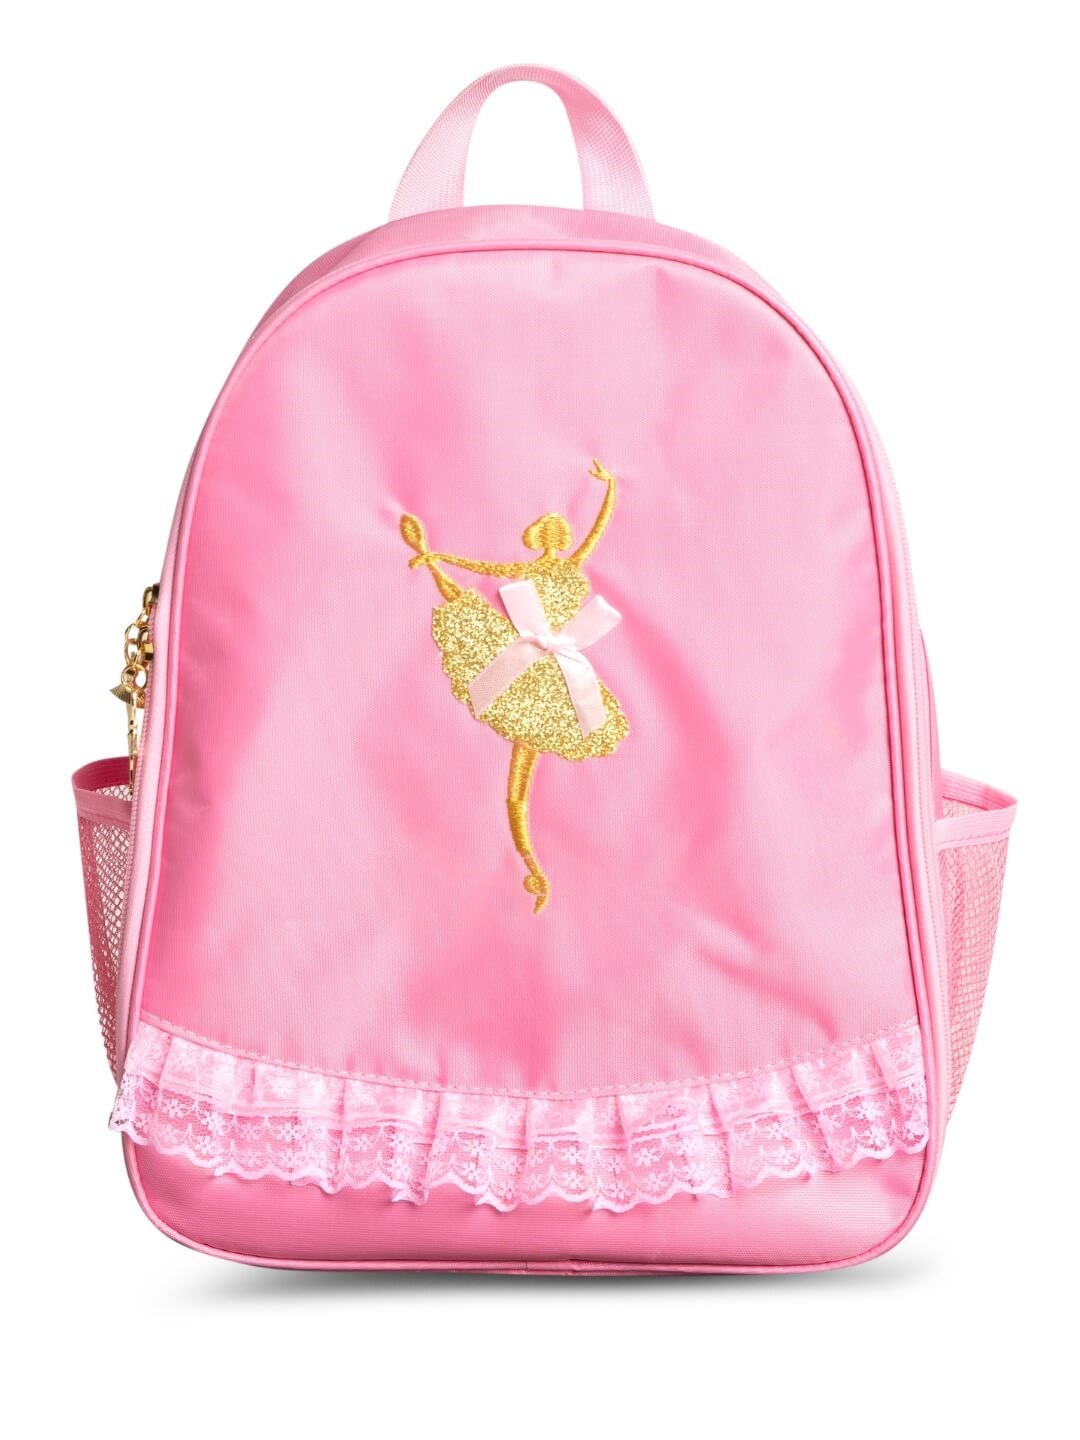 OEM Pink Tutu Dress Backpack